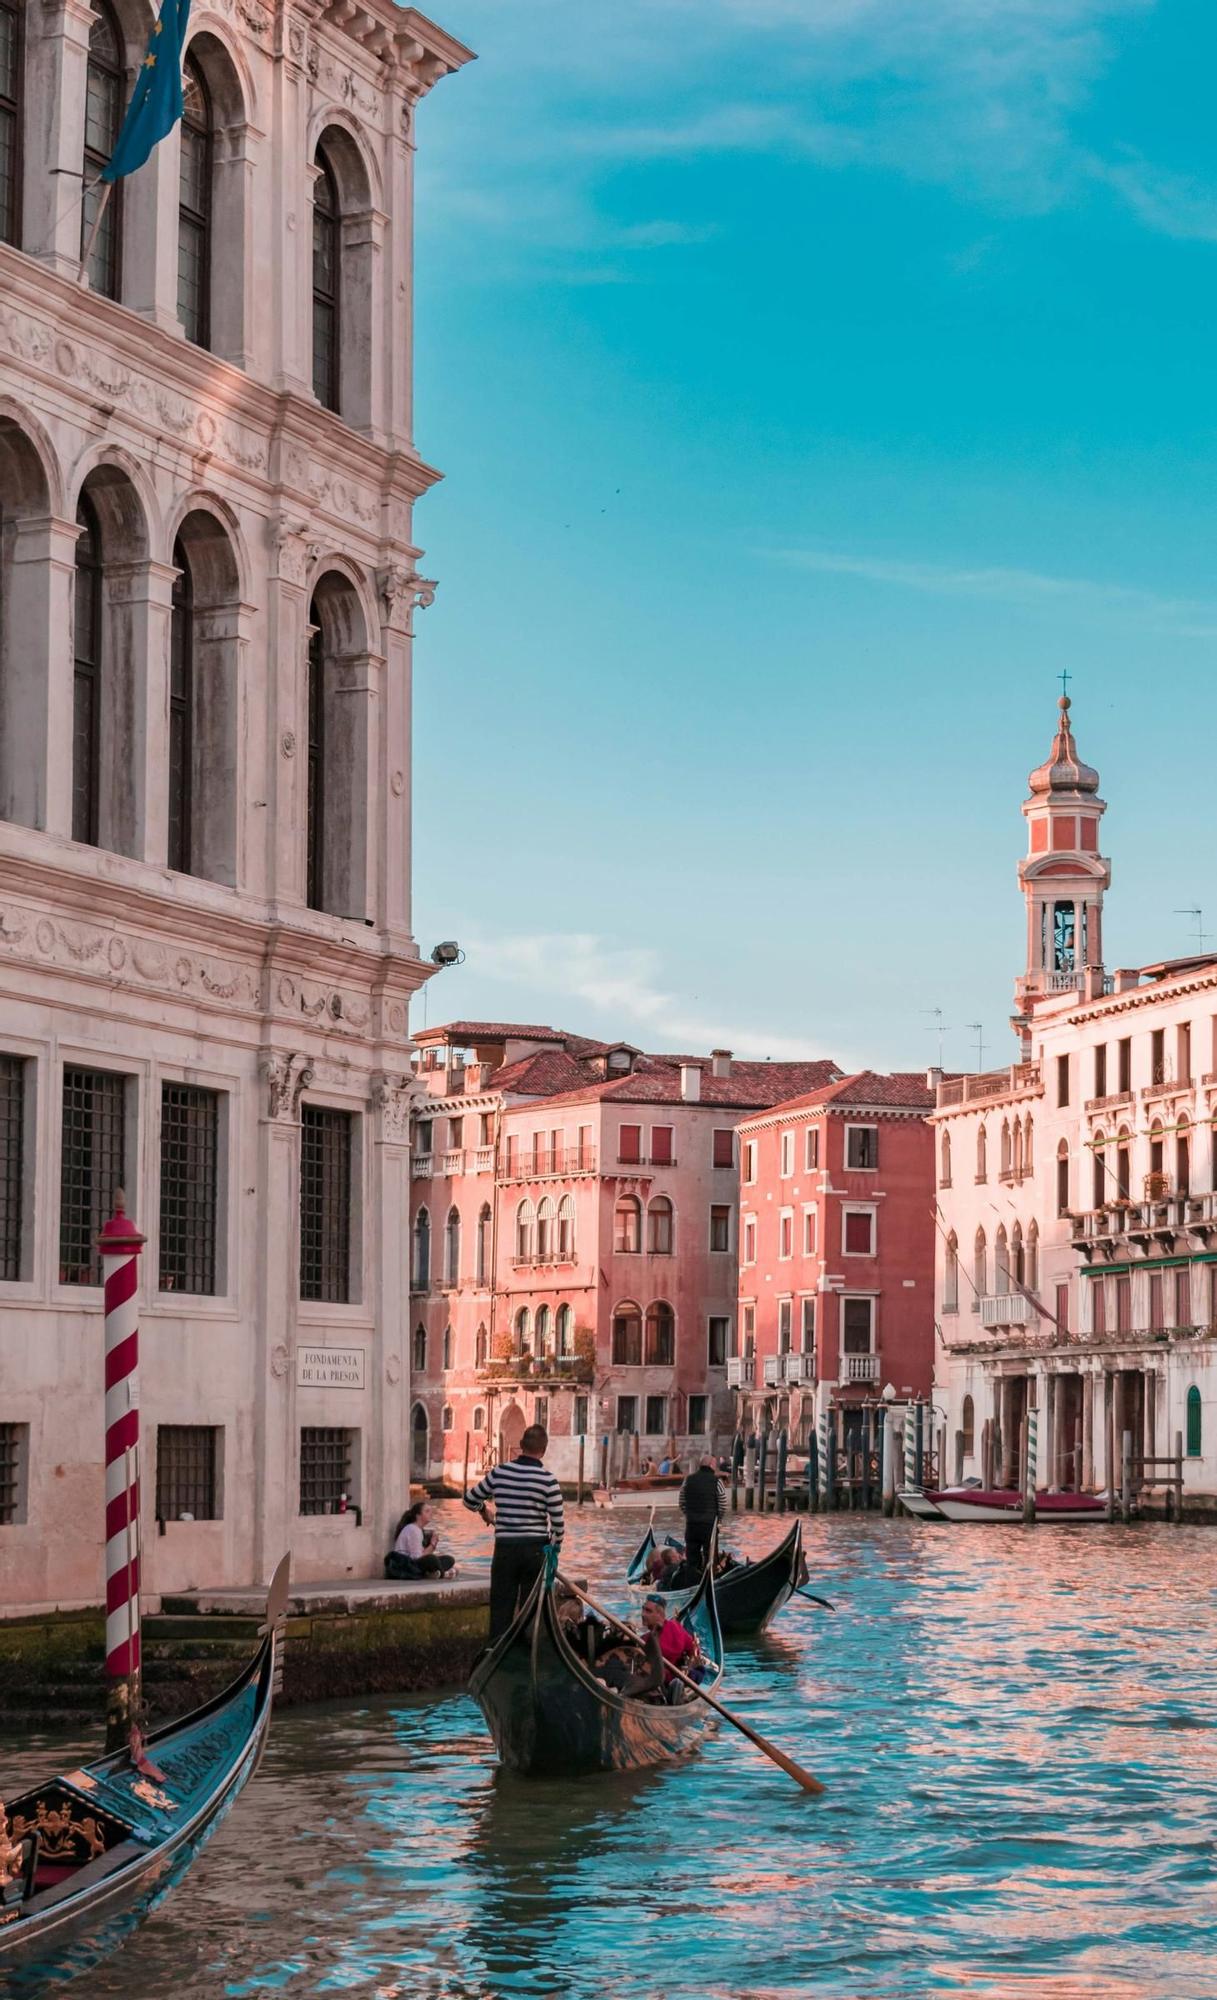 Los canales de Venecia la han convertido en uno de los destinos favoritos del mundo